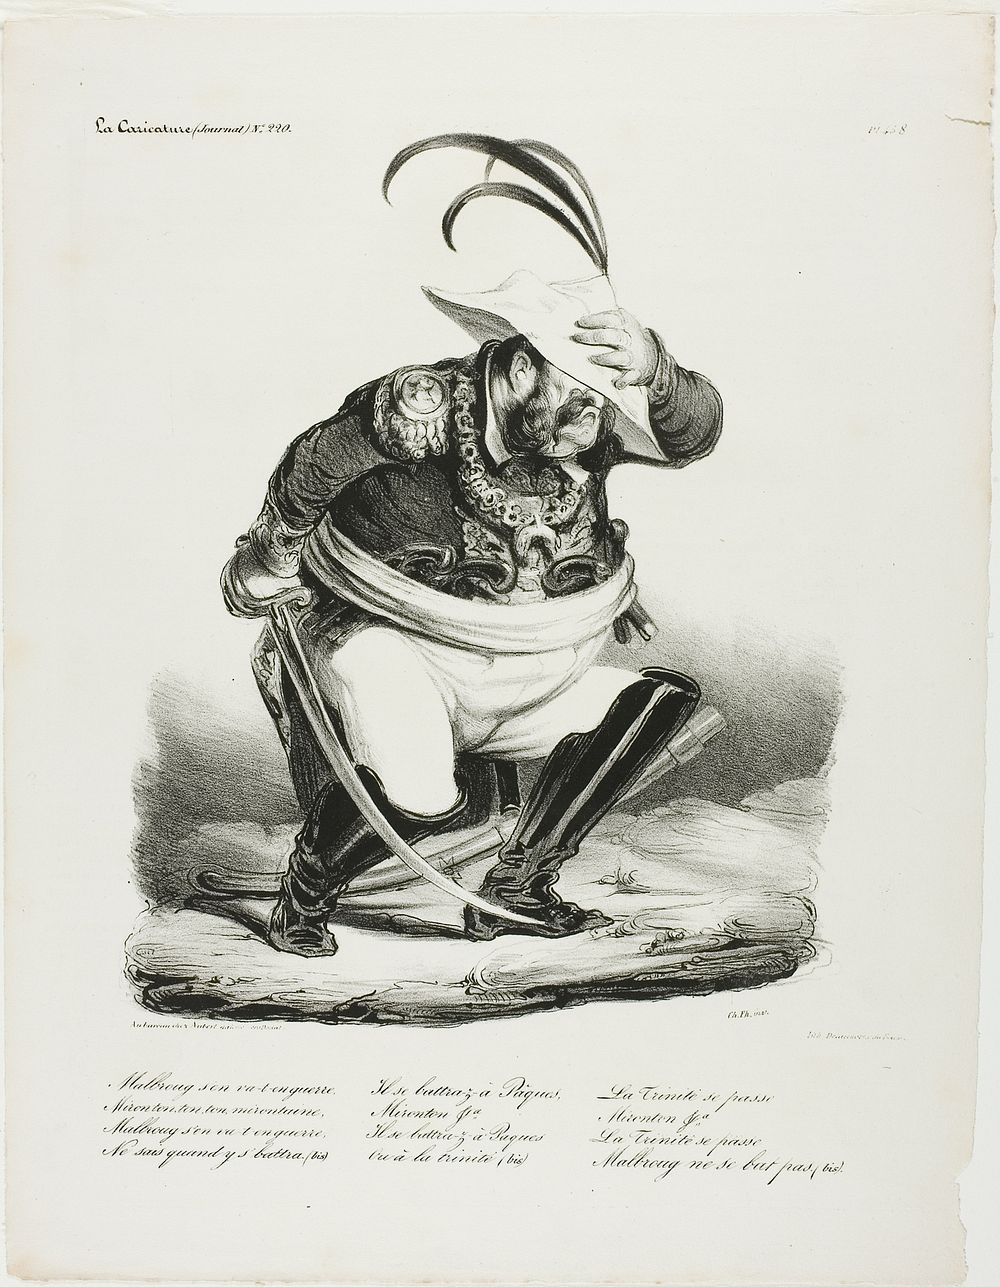 Malbroug s'en va-t-en Guerre... by Honoré-Victorin Daumier